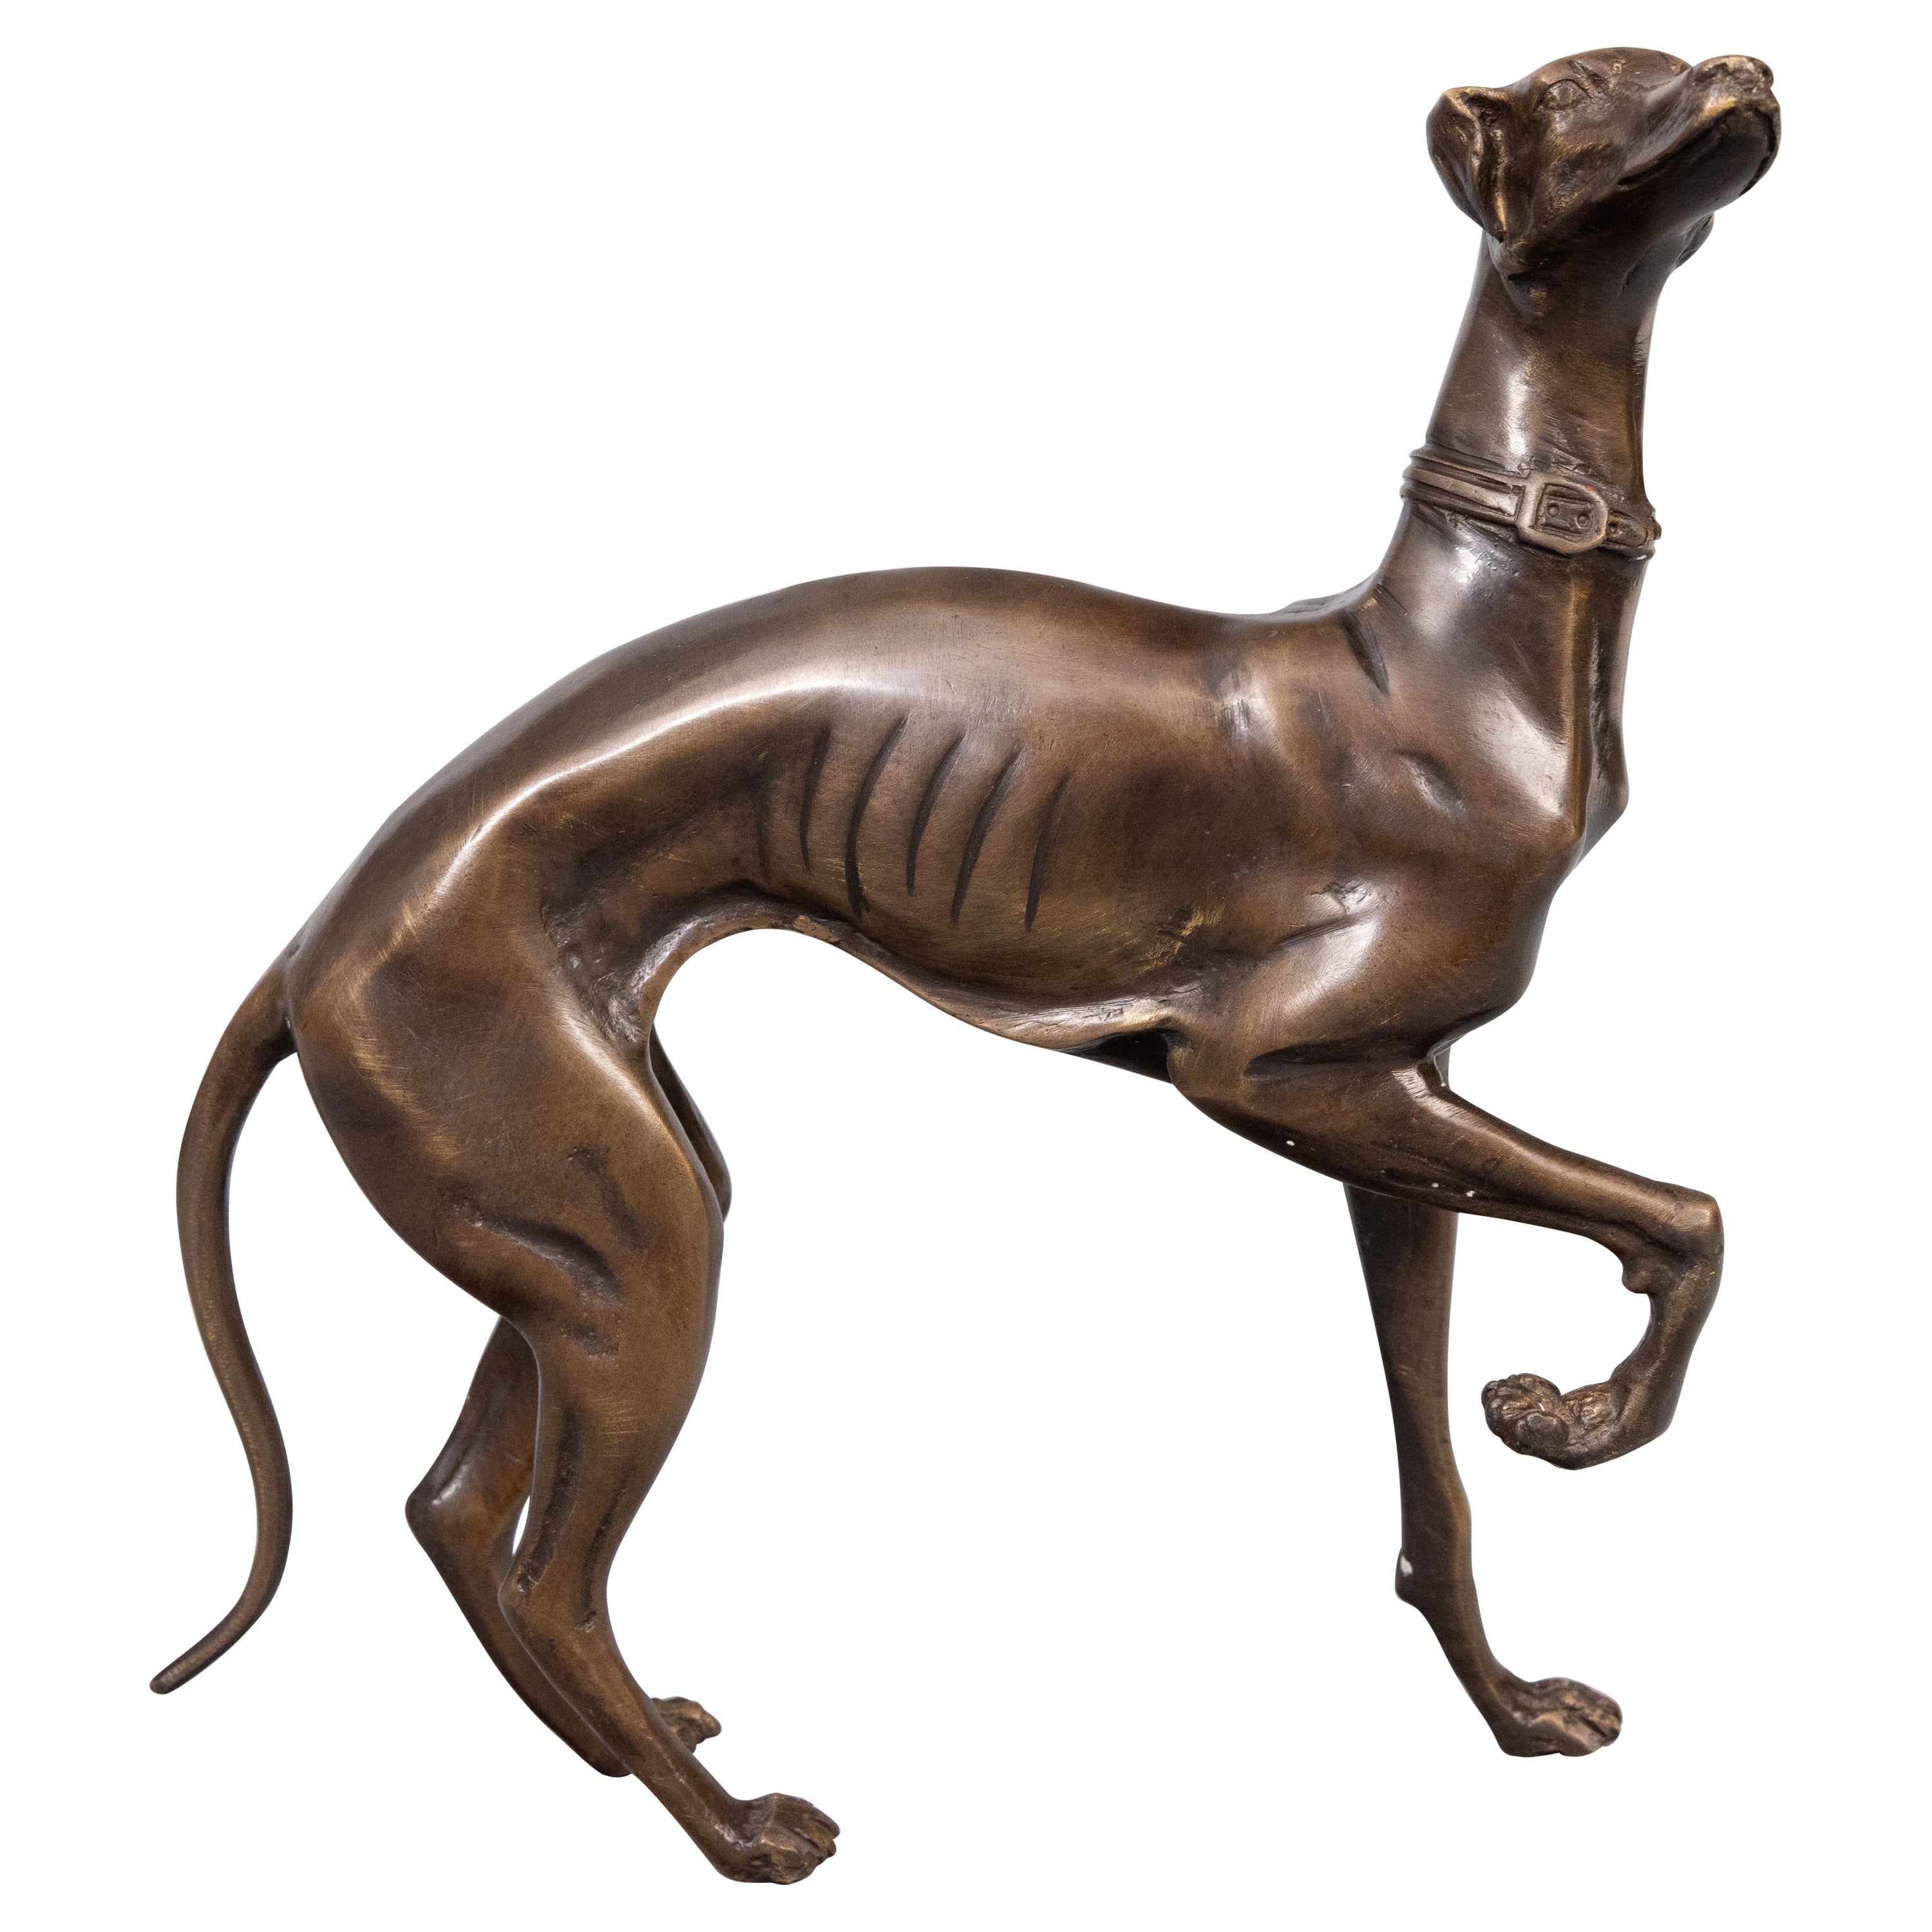  Bronze français Lévrier Whippet Dog Sculpture Figurine, circa 1960